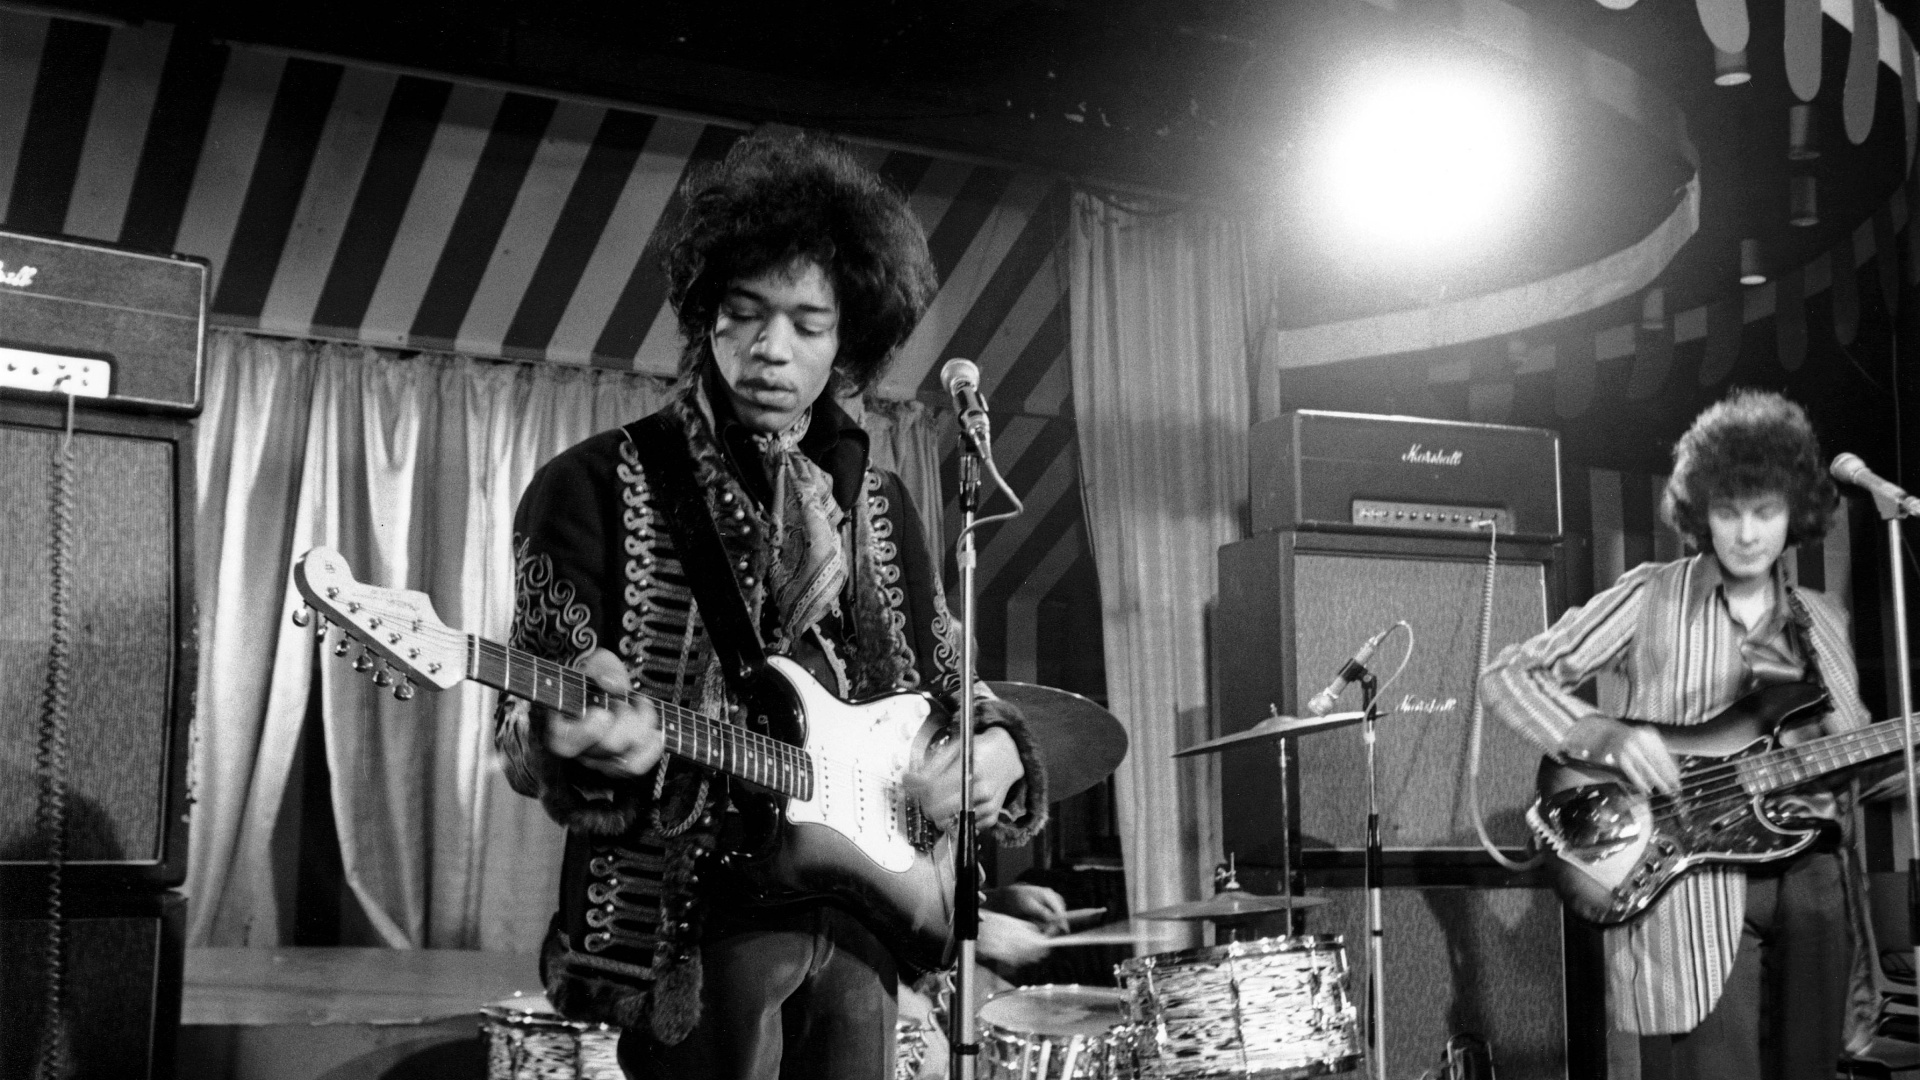 <p>La muerte de Jimi Hendrix se dictaminó como resultado de la asfixia por su propio vómito después de una sobredosis. Pero la autopsia no pudo aclarar si fue un accidente, un acto consciente del artista para quitarse la vida o (incluso) un homicidio. "La pregunta de por qué Hendrix tomó tantos somníferos no puede responderse con seguridad", habría dicho el forense, según The Rolling Stone. El misterio siempre permanecerá sin resolver.</p>